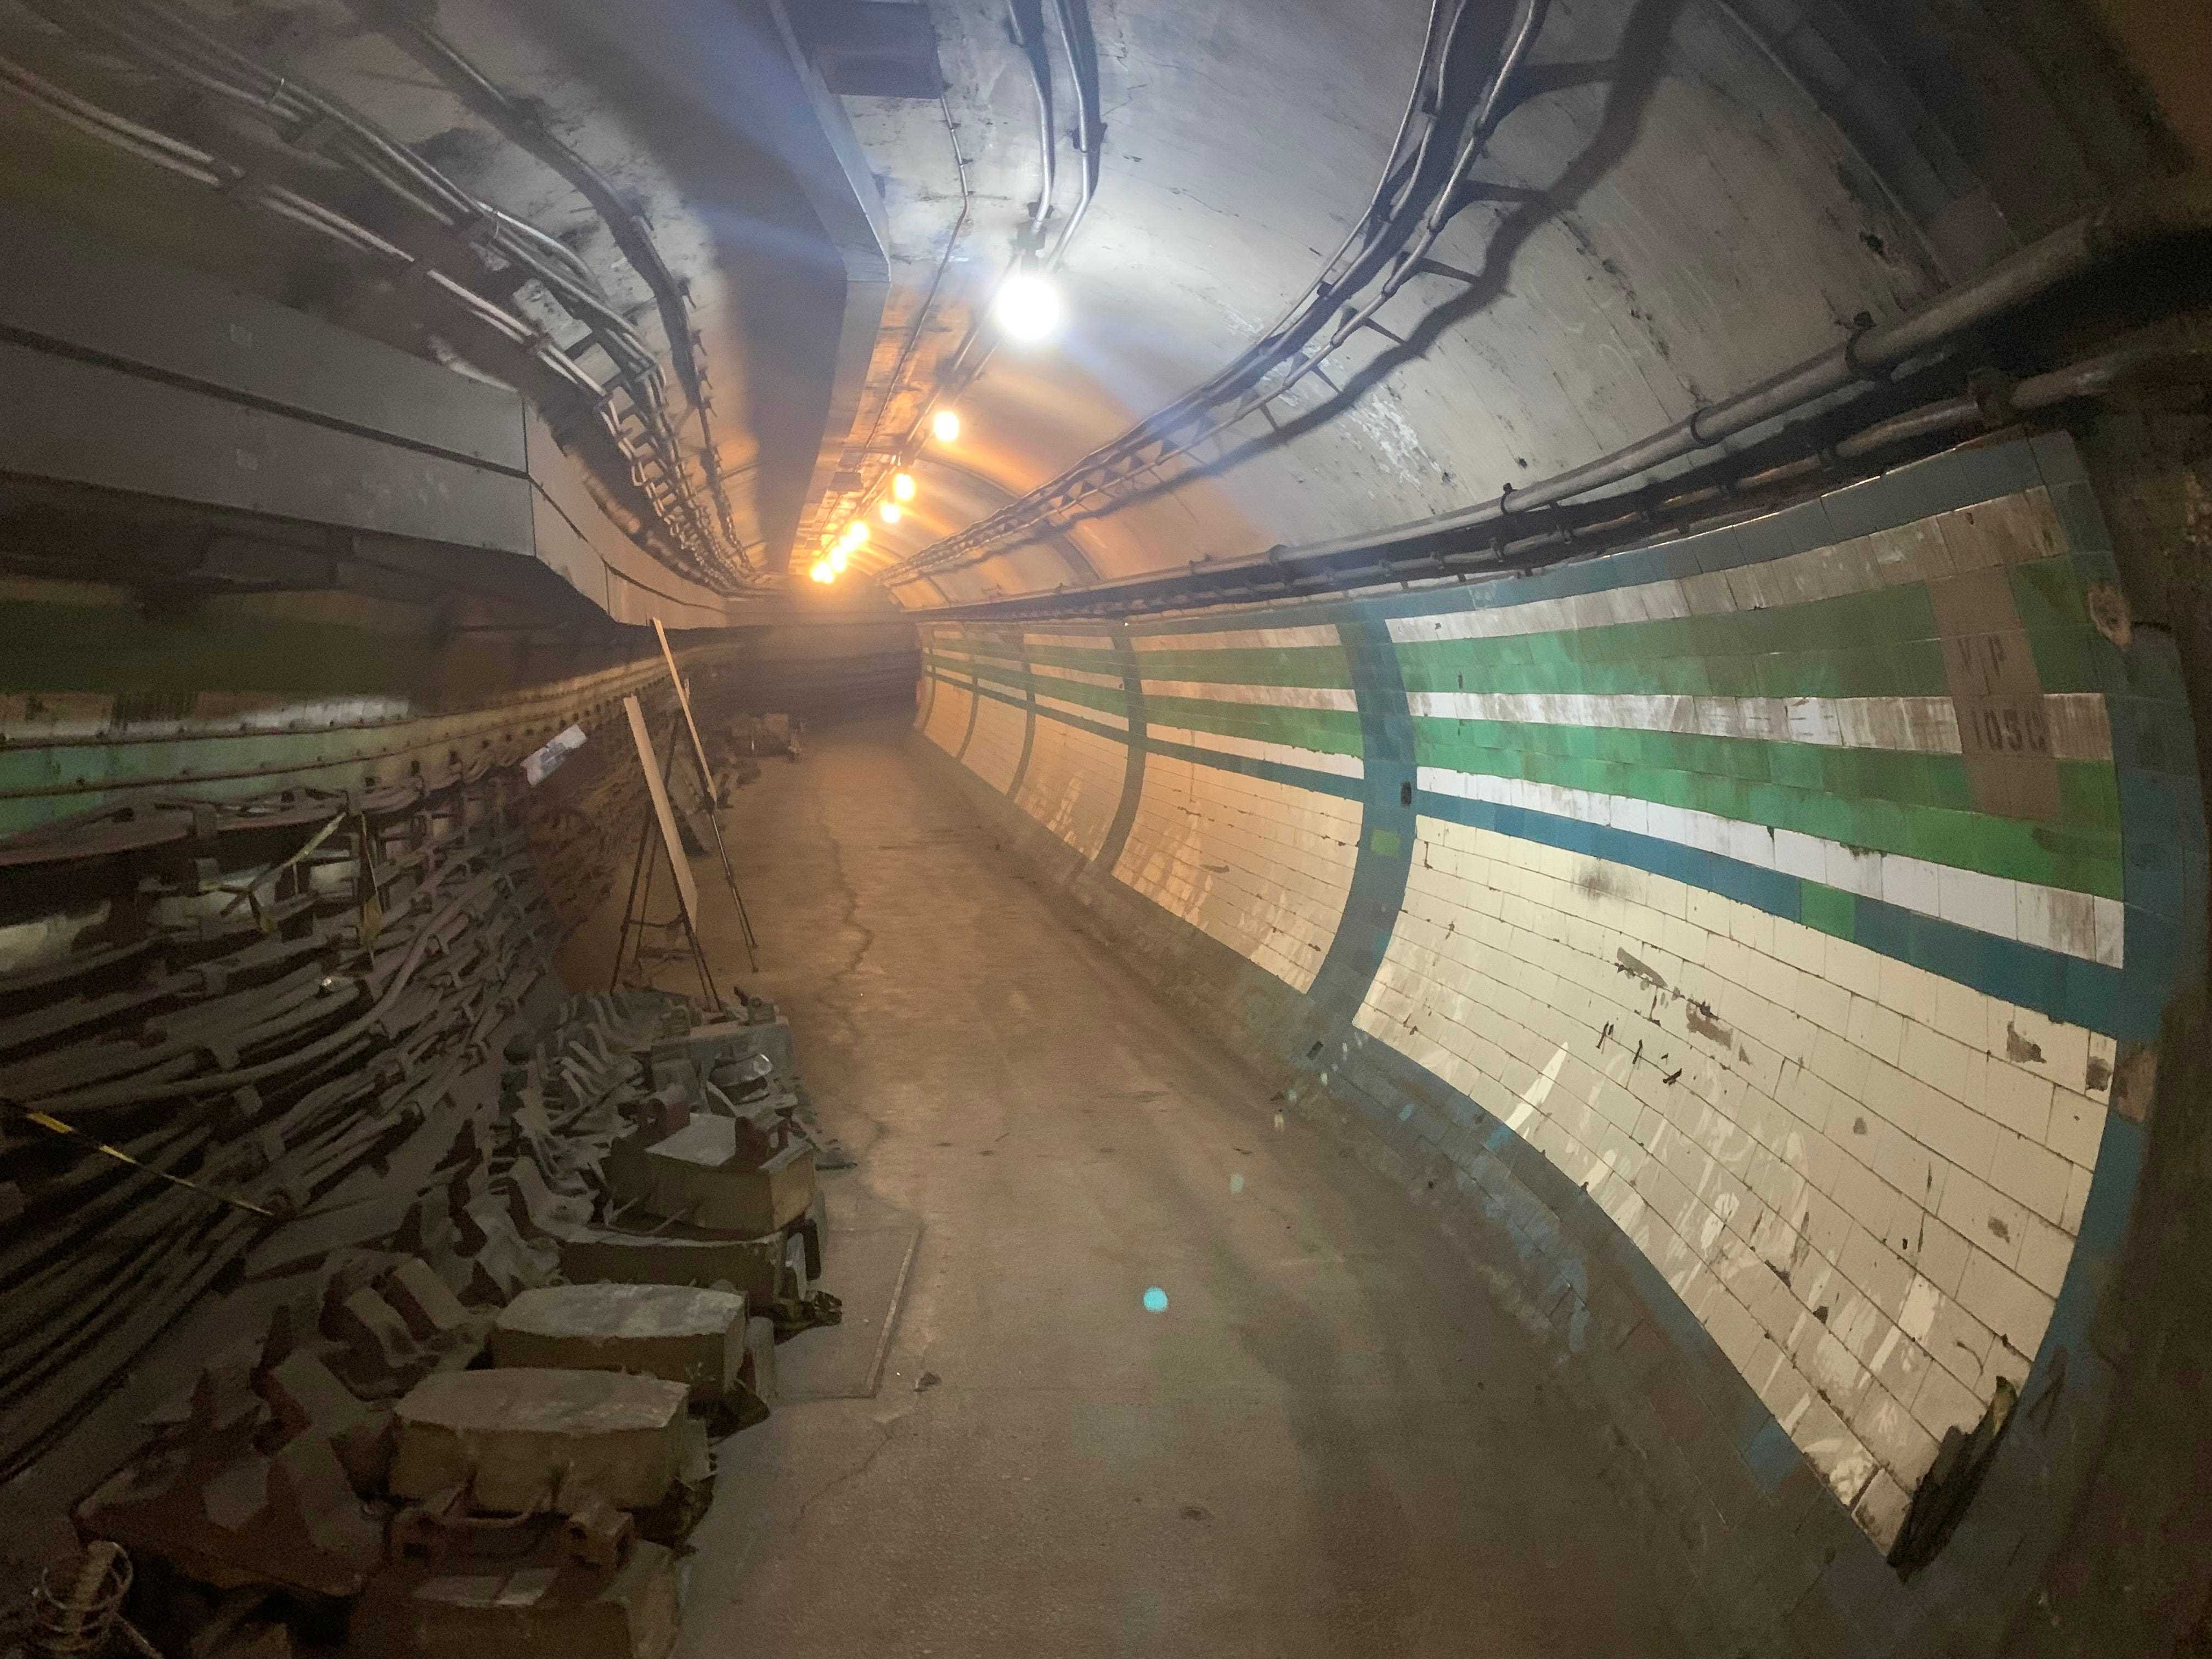 Einer der ehemaligen unterirdischen Korridore am Bahnhof Piccadilly Circus, London.